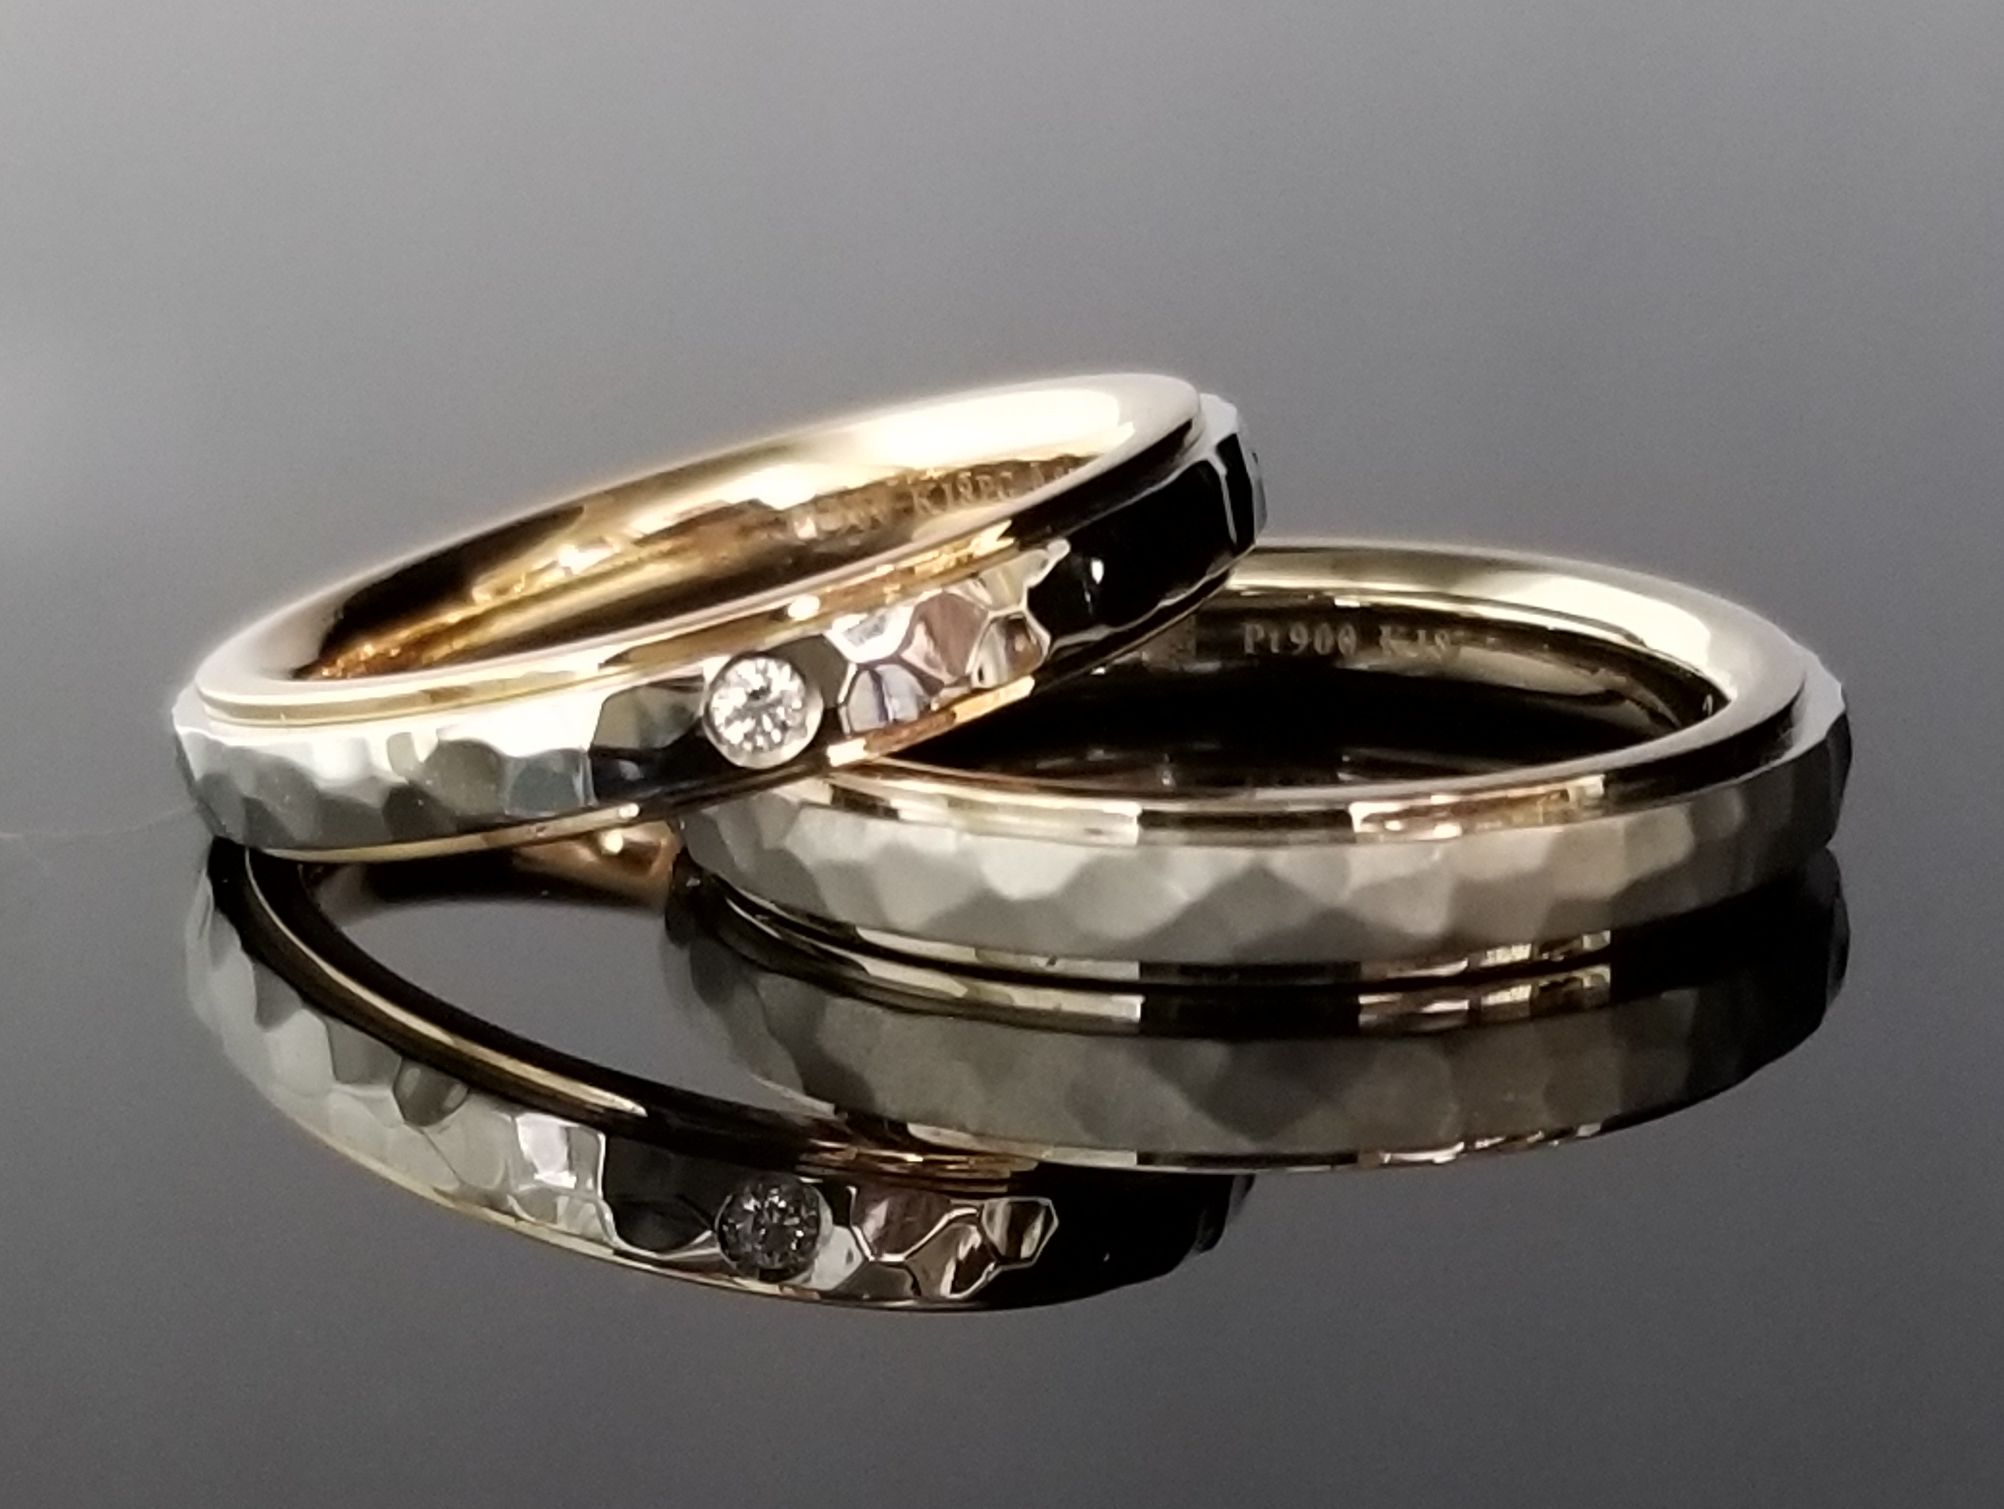 鍛造の結婚指輪独特のデザイン。槌目模様の魅力とは